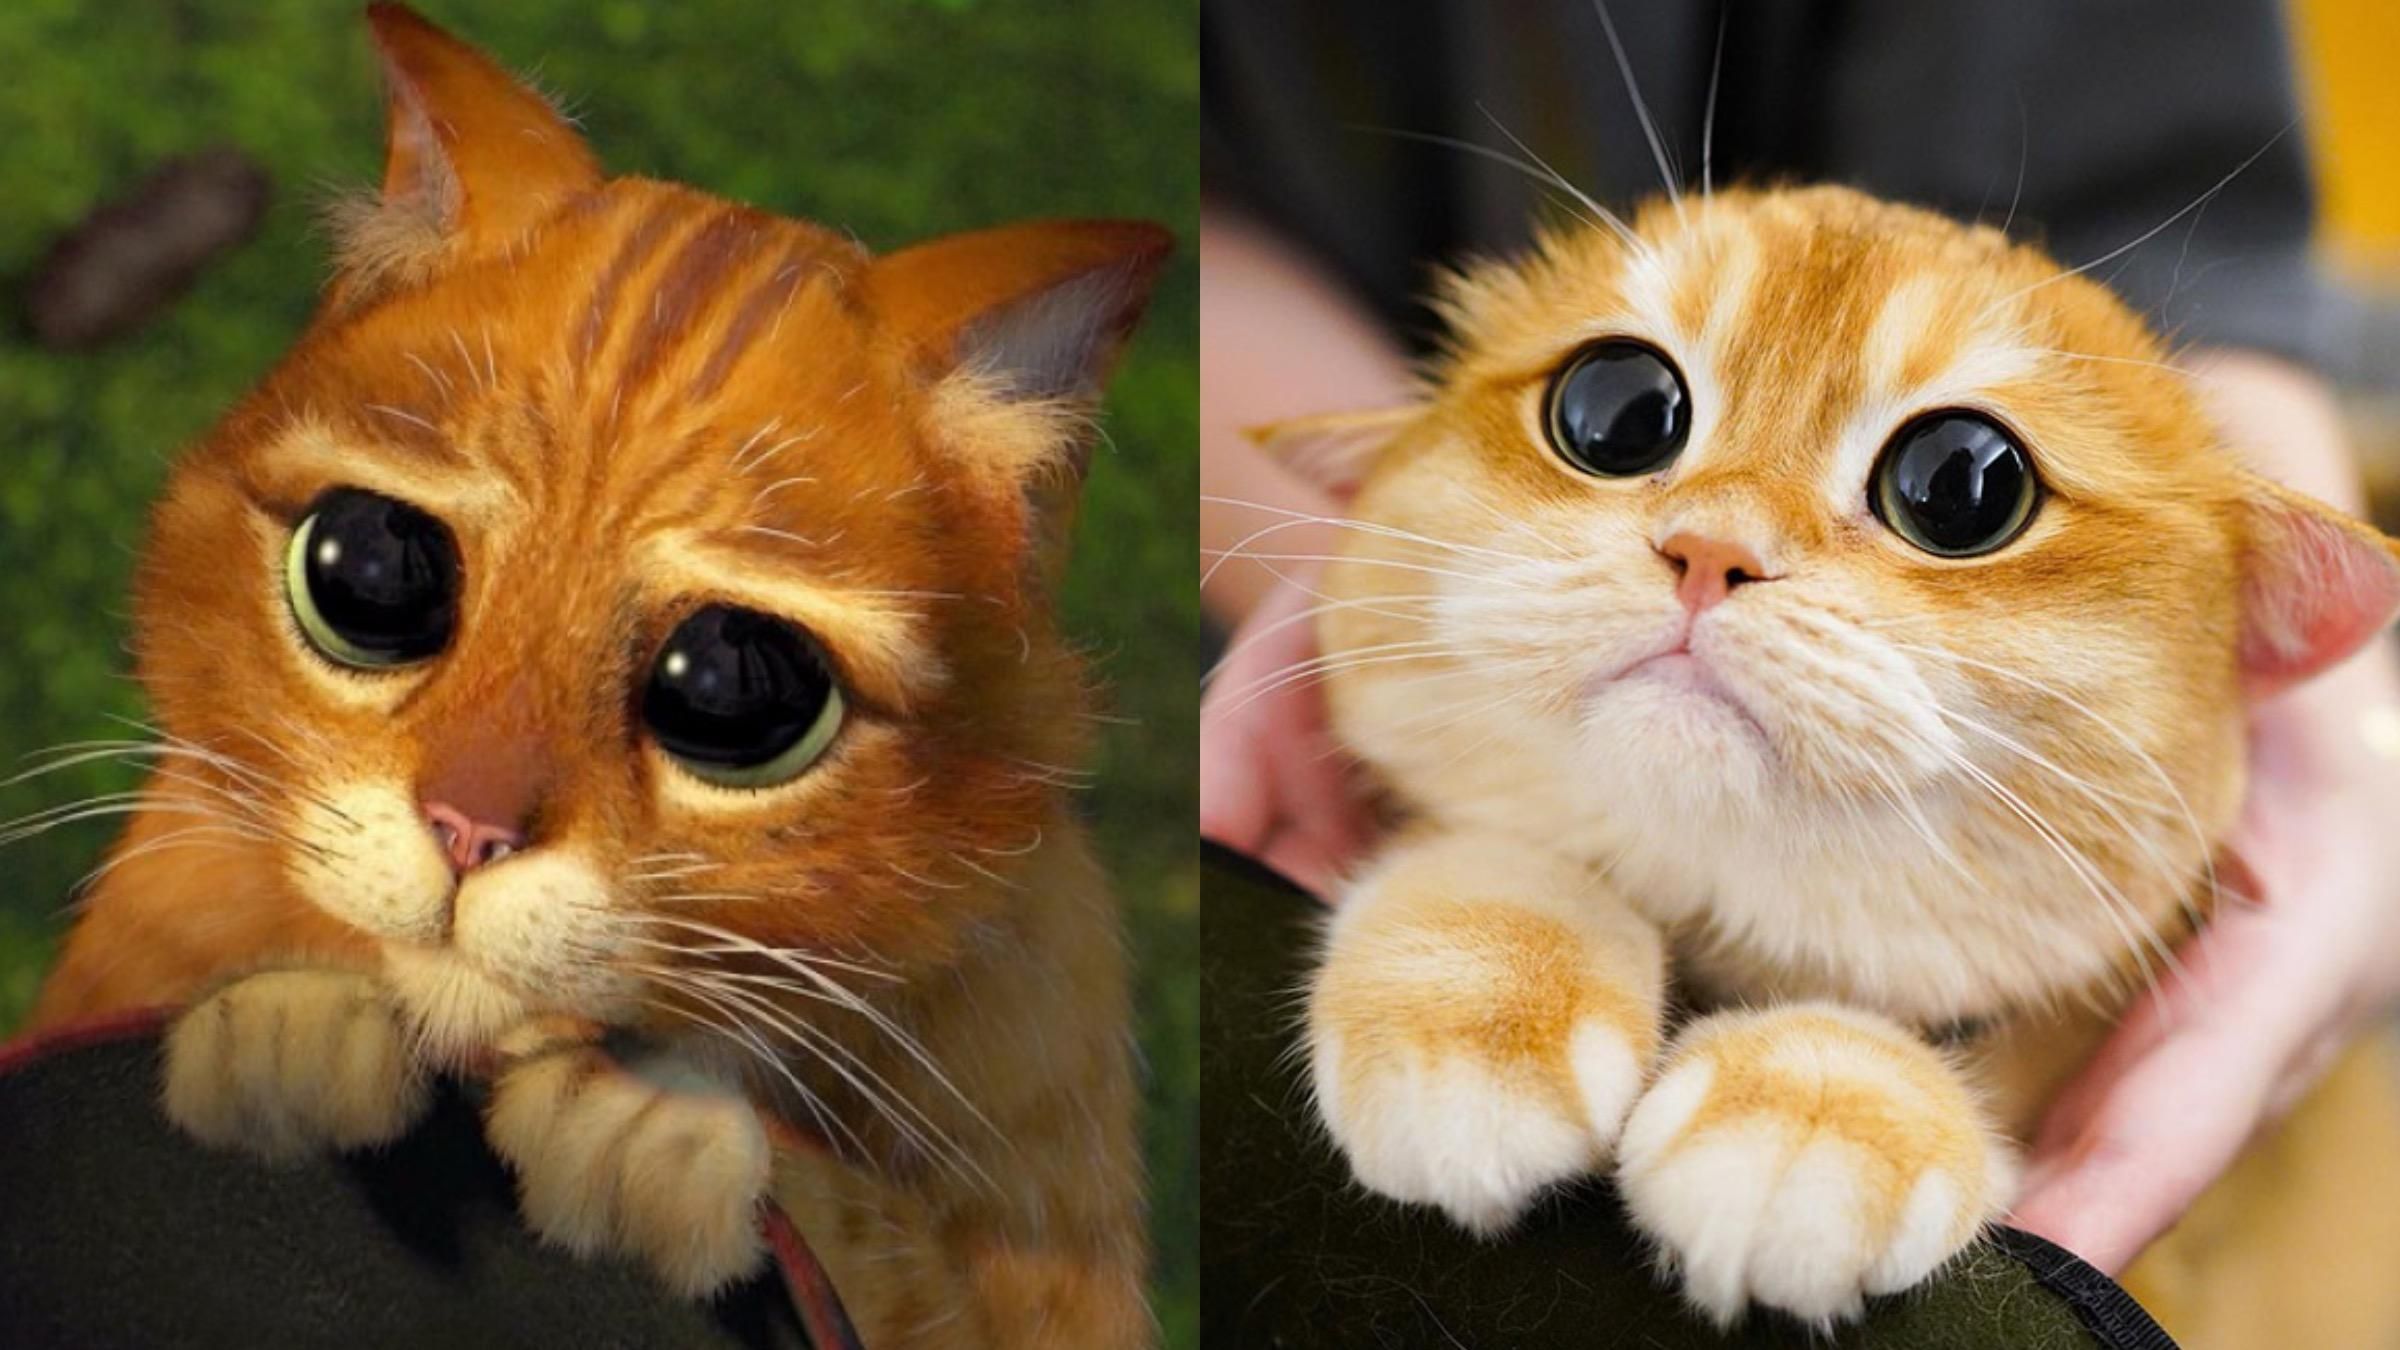 Реальный кот из "Шрека": в соцсетях нашли копию персонажа мультфильма - Pets